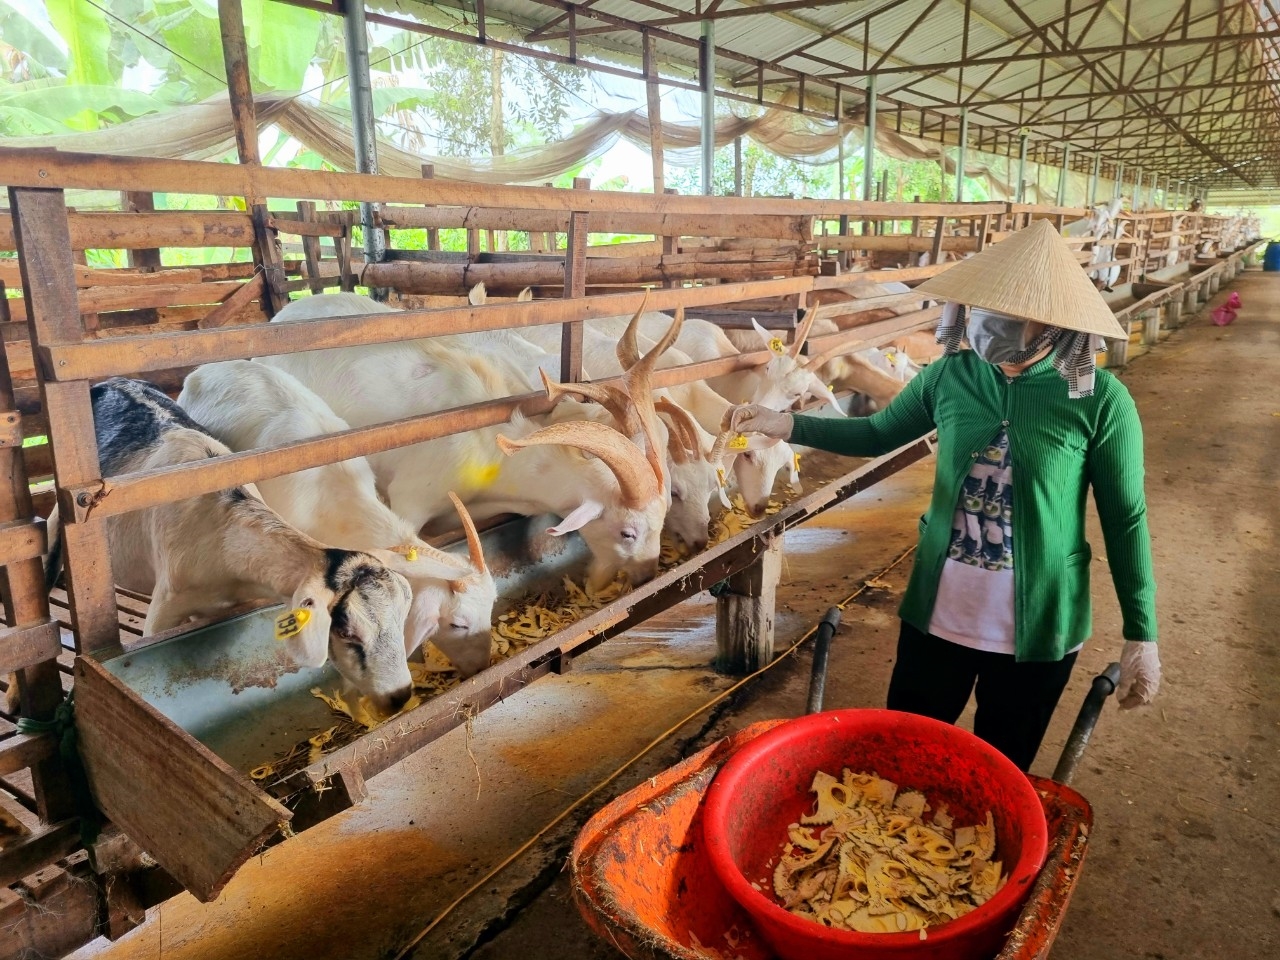 Mô hình nuôi dê lấy sữa làm 3 sản phẩm OCOP từ sữa dê của huyện Châu Thành A, tỉnh Hậu Giang. Ảnh: Hồng Cẩm